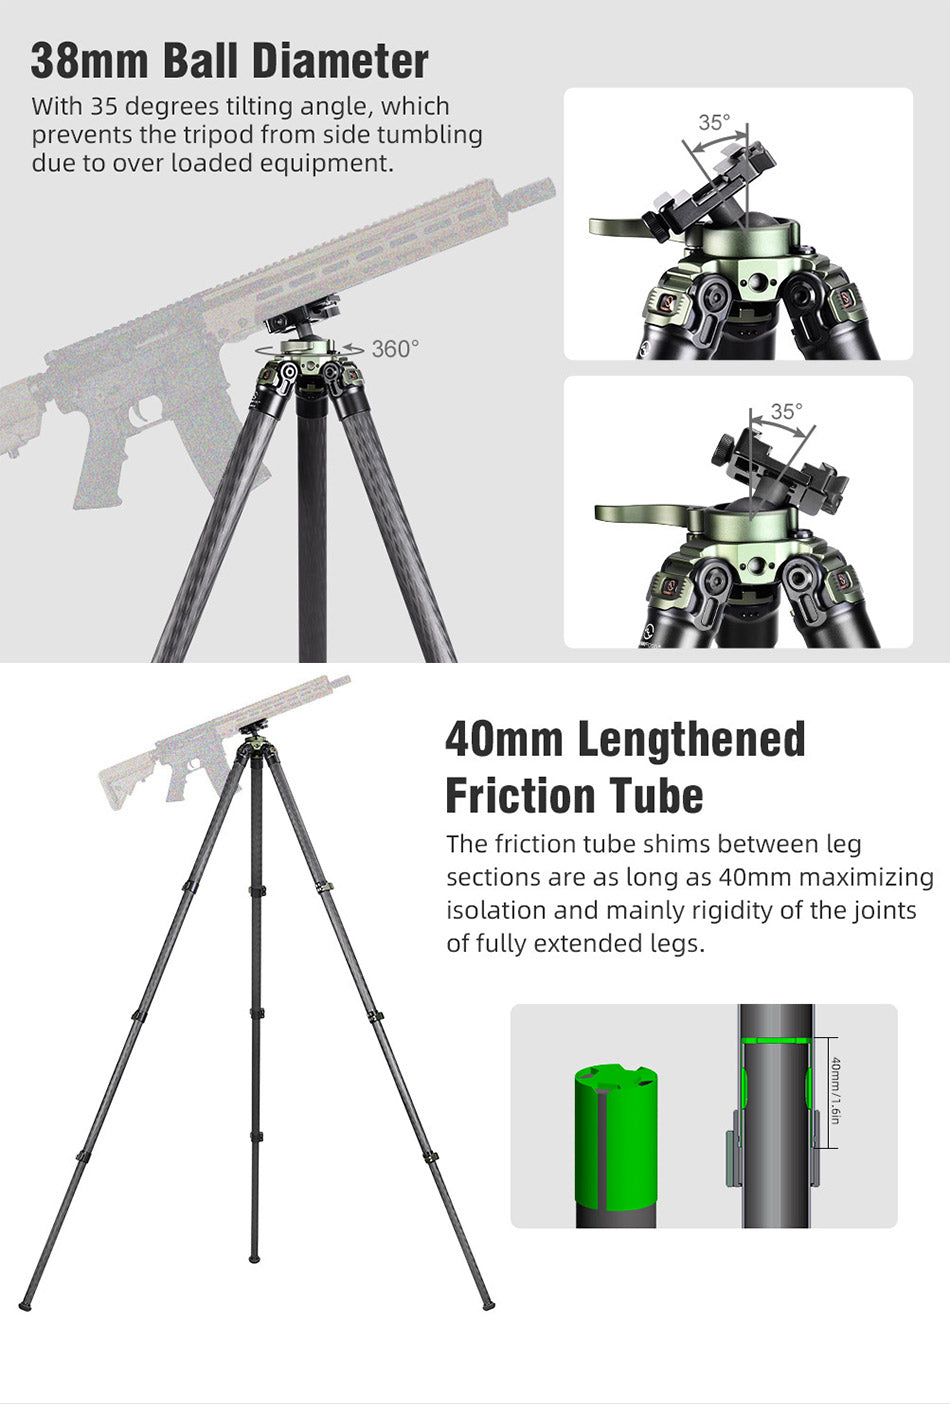  SUNWYAFOTO TL3240CS-Q Trípode de caza para soporte de rifle de  tiro de fibra de carbono : Electrónica